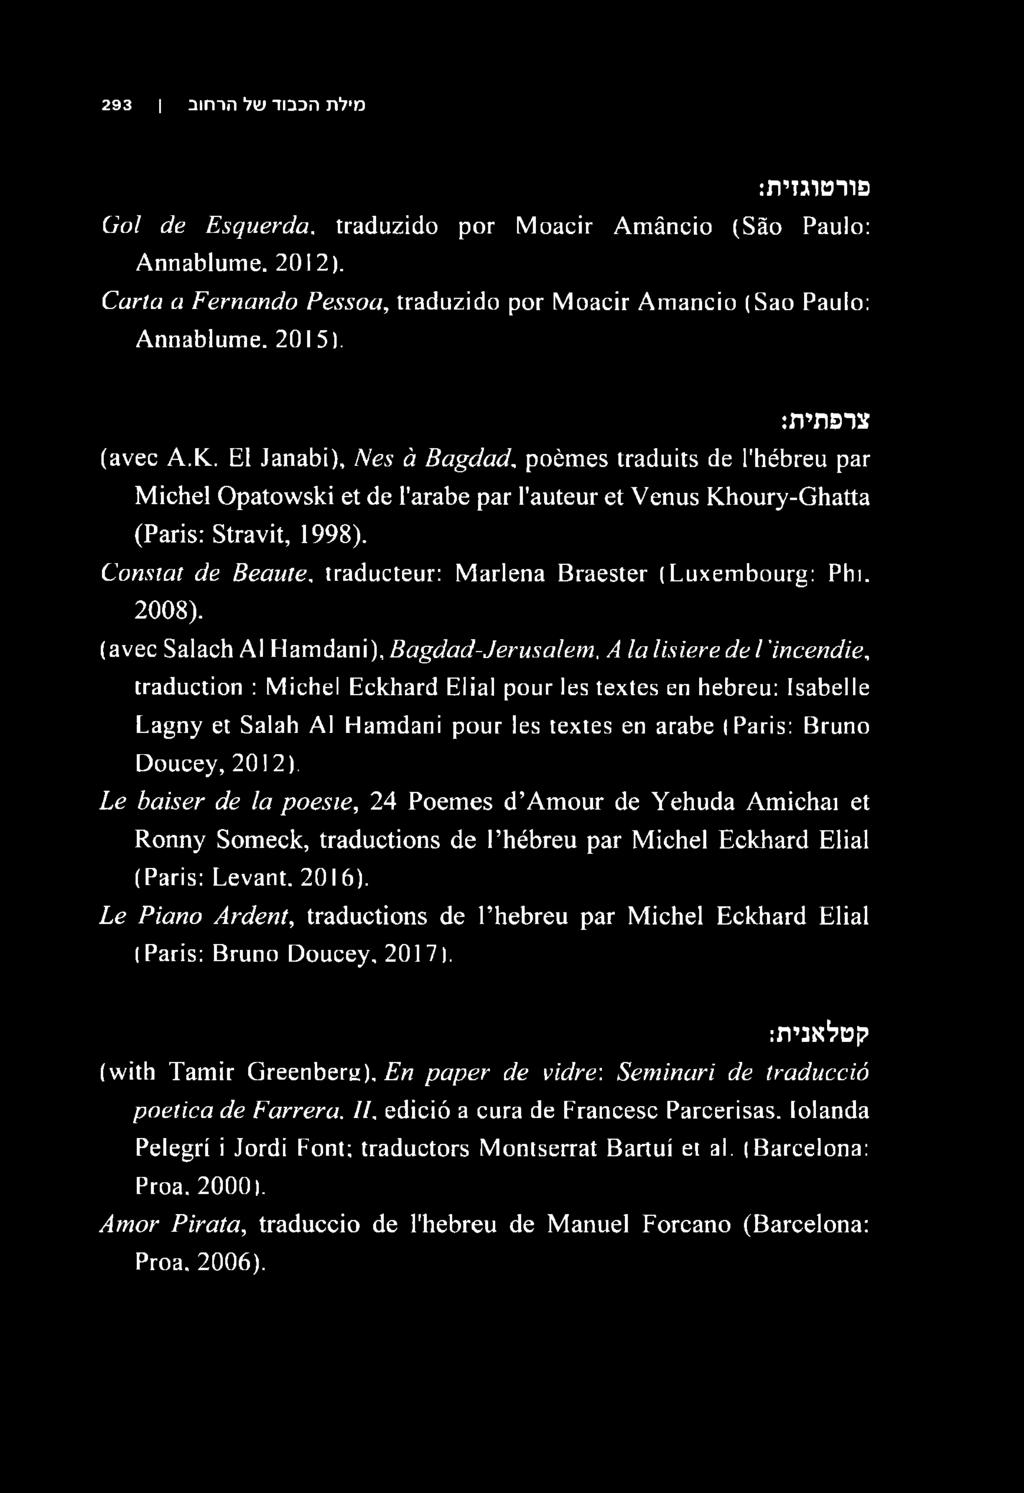 Constat de Beaute, traducteur: Marlena Braester (Luxembourg: Phi, 2008).